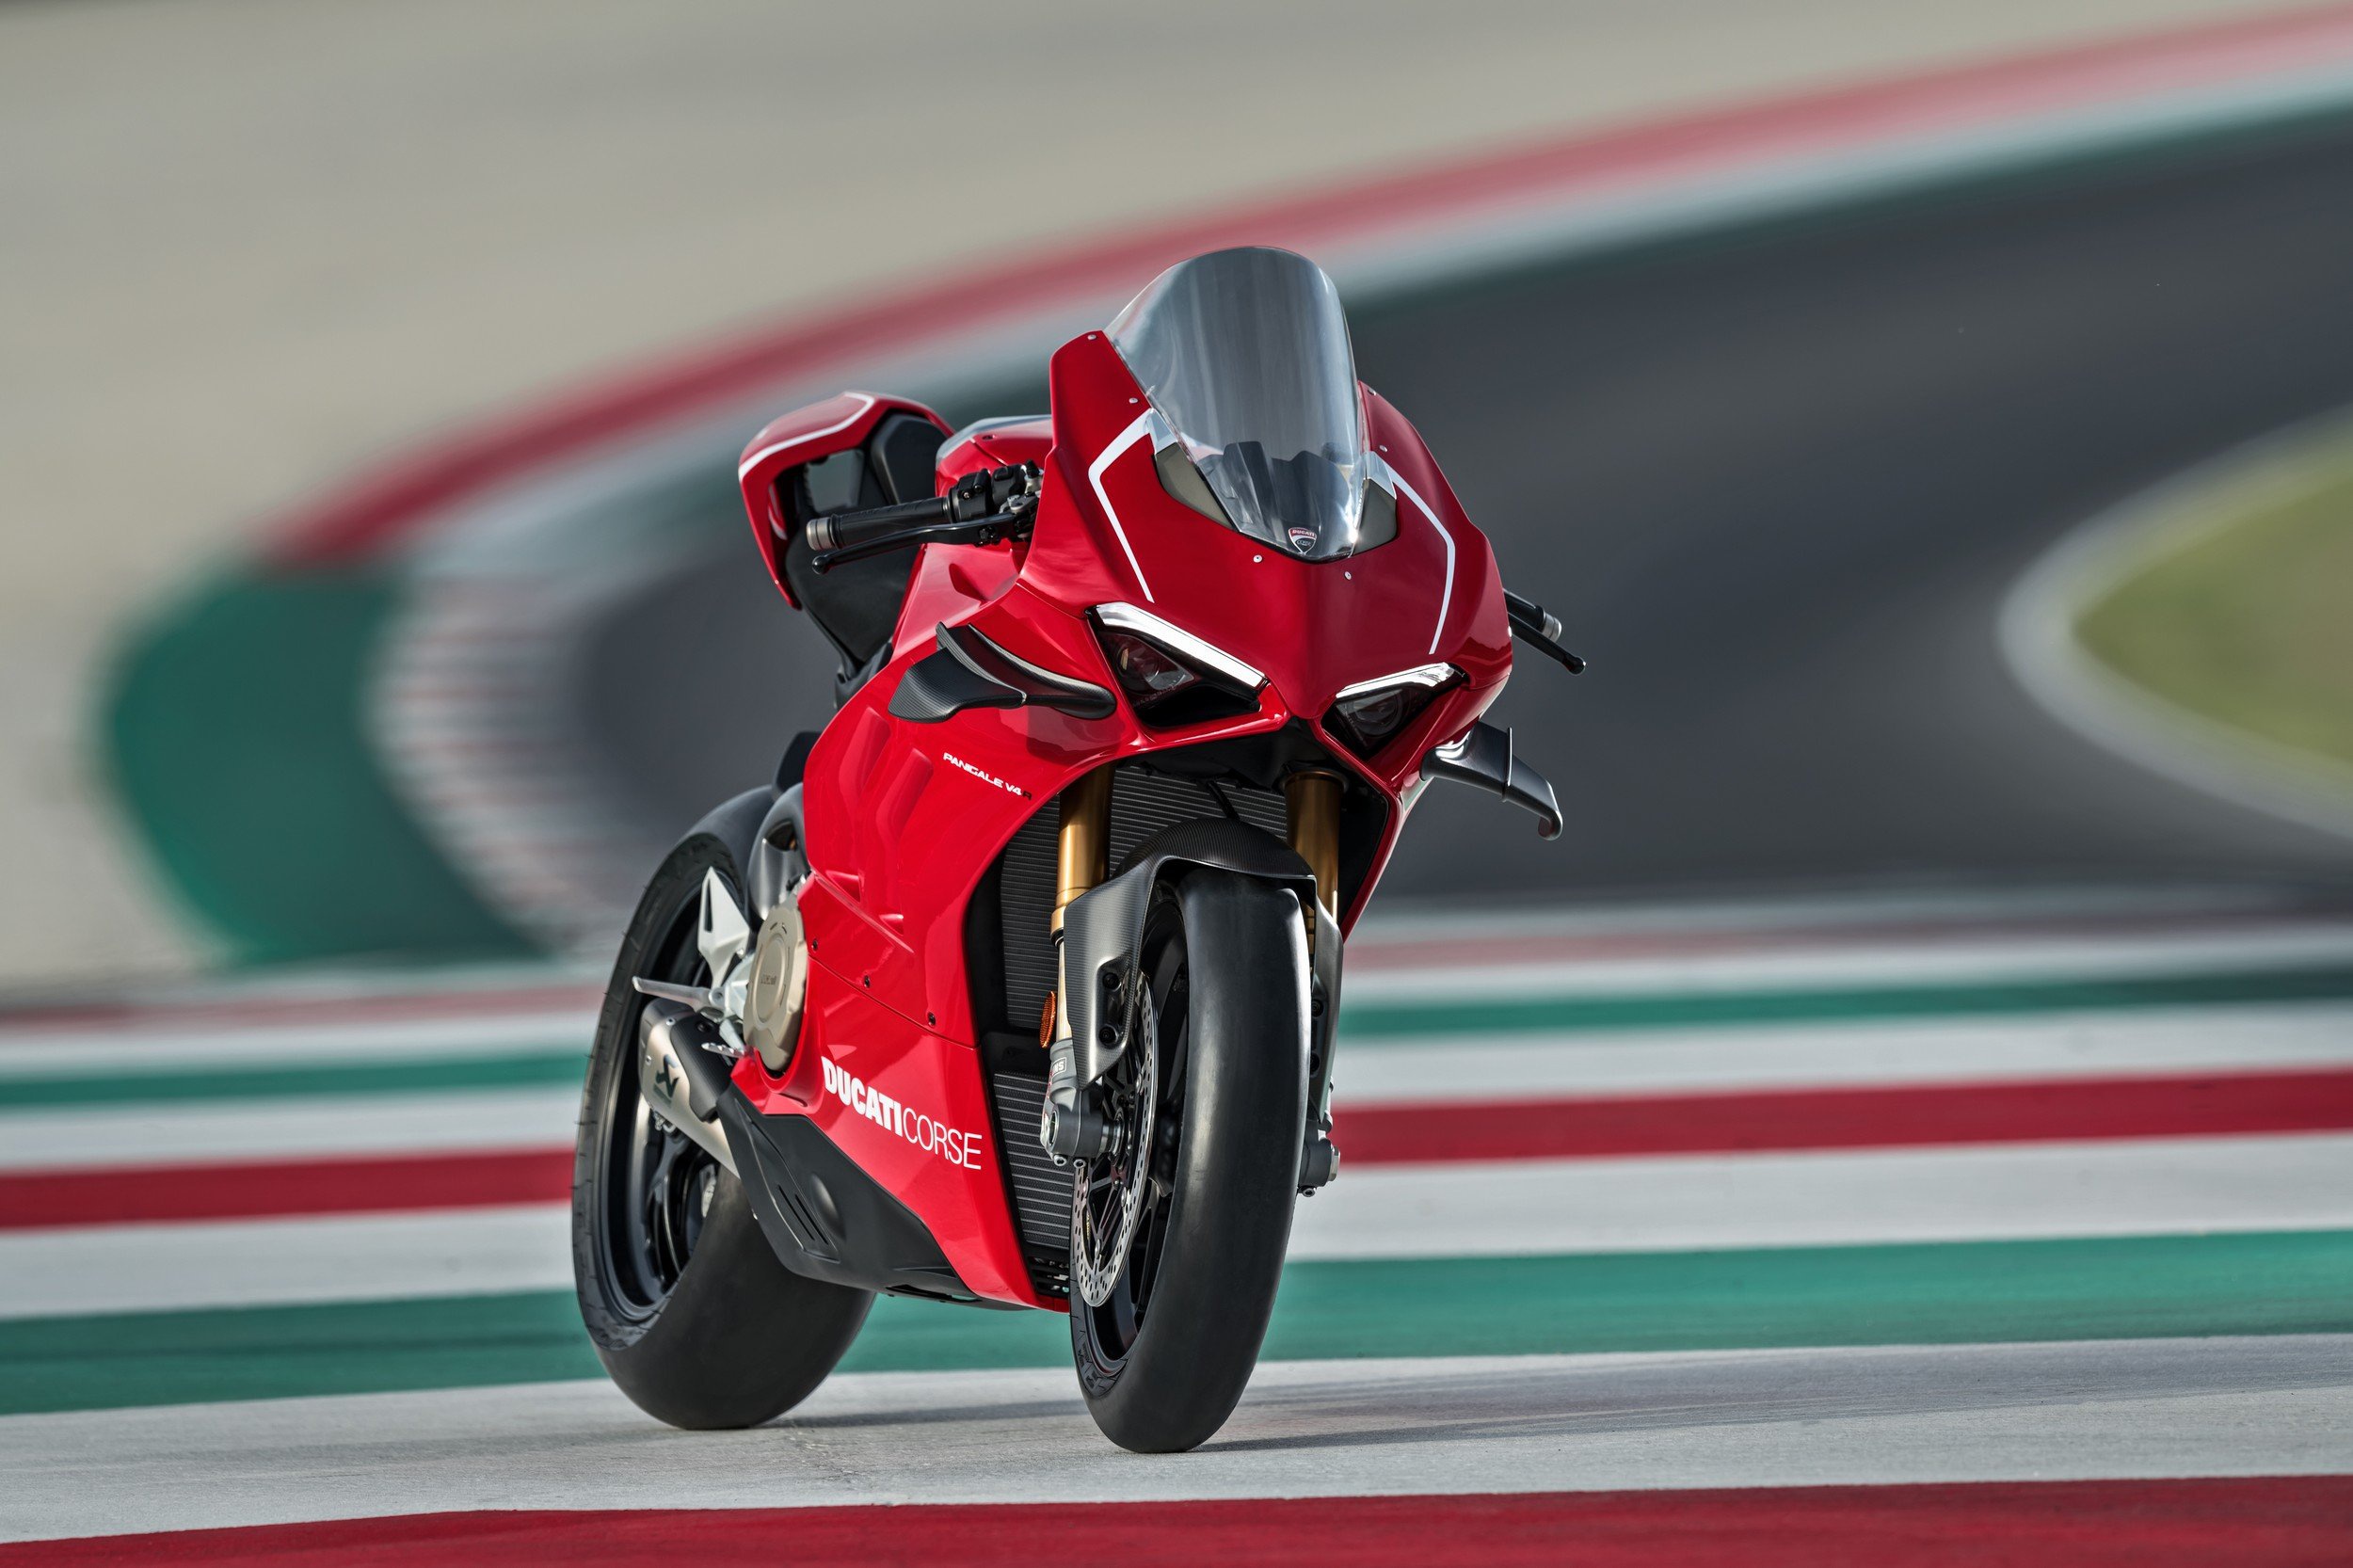 Siêu phẩm Ducati Panigale V4 R 2019 chính thức ra mắt 165 Kg - 234 Hp -  Motosaigon